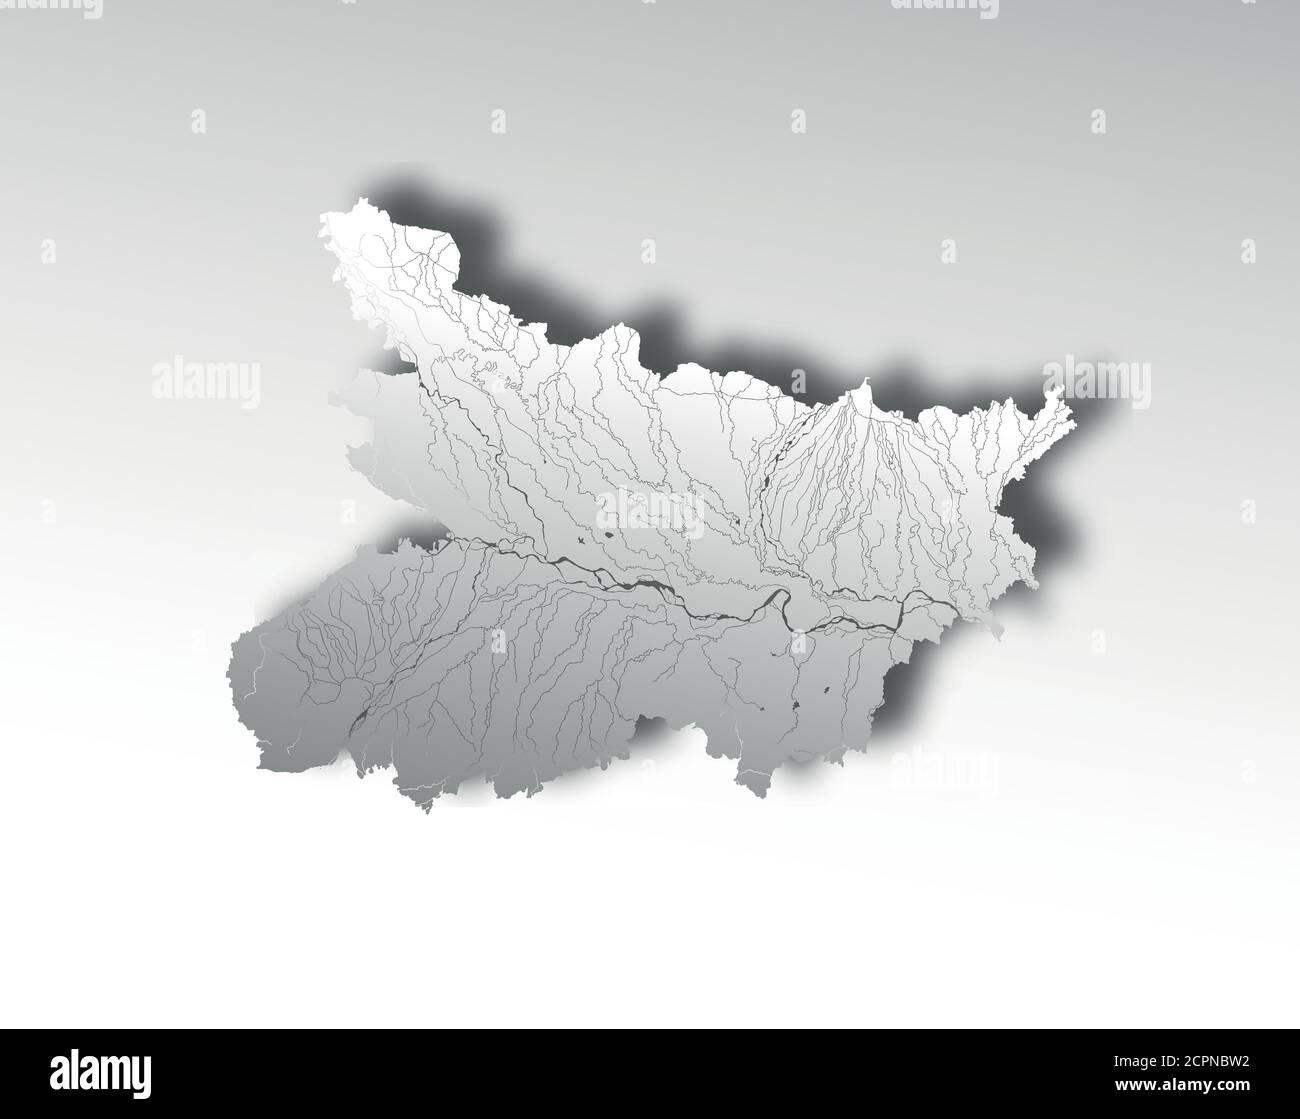 Indien Staaten - Karte von Bihar mit Papierschnitt-Effekt. Flüsse und Seen werden angezeigt. Bitte sehen Sie sich meine anderen Bilder von kartographischen Serien an - sie sind alle ve Stock Vektor